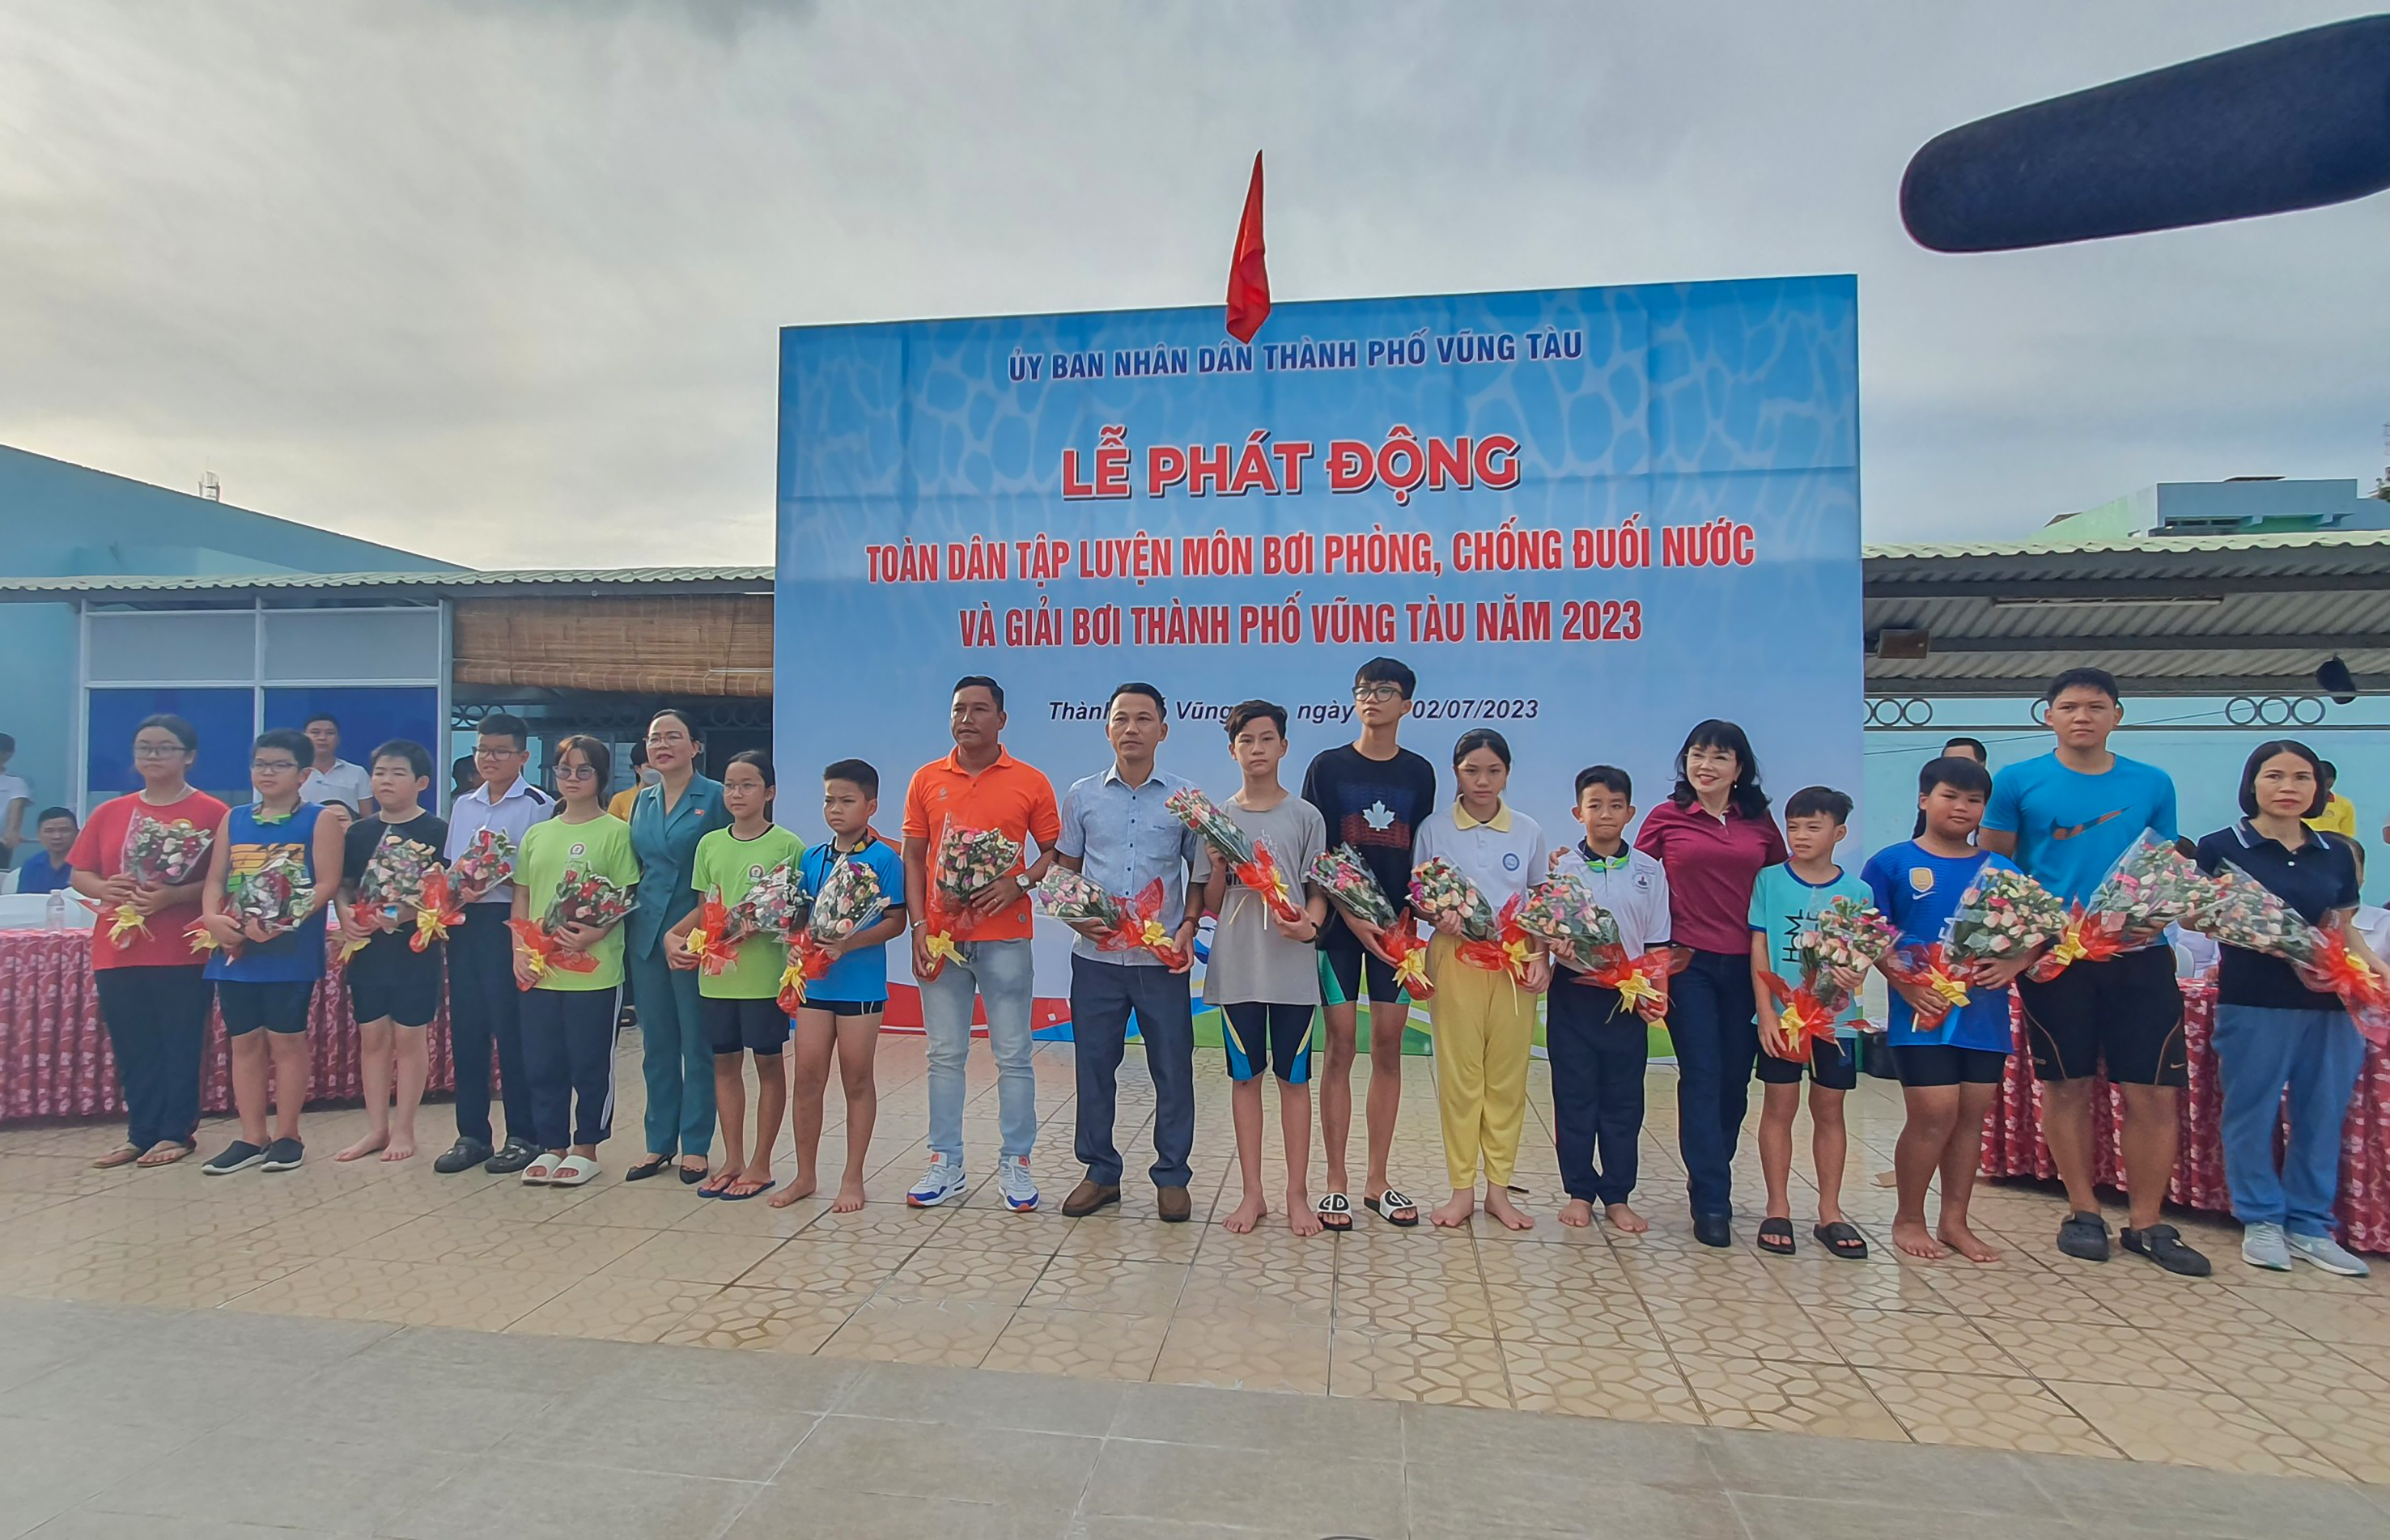 Bà Nguyễn Thị Thu Hương, Phó Chủ tịch UBND TP. Vũng Tàu cùng đại diện BTC tặng hoa chúc mừng các đại biểu, phụ huynh, HS tham gia chương trình.